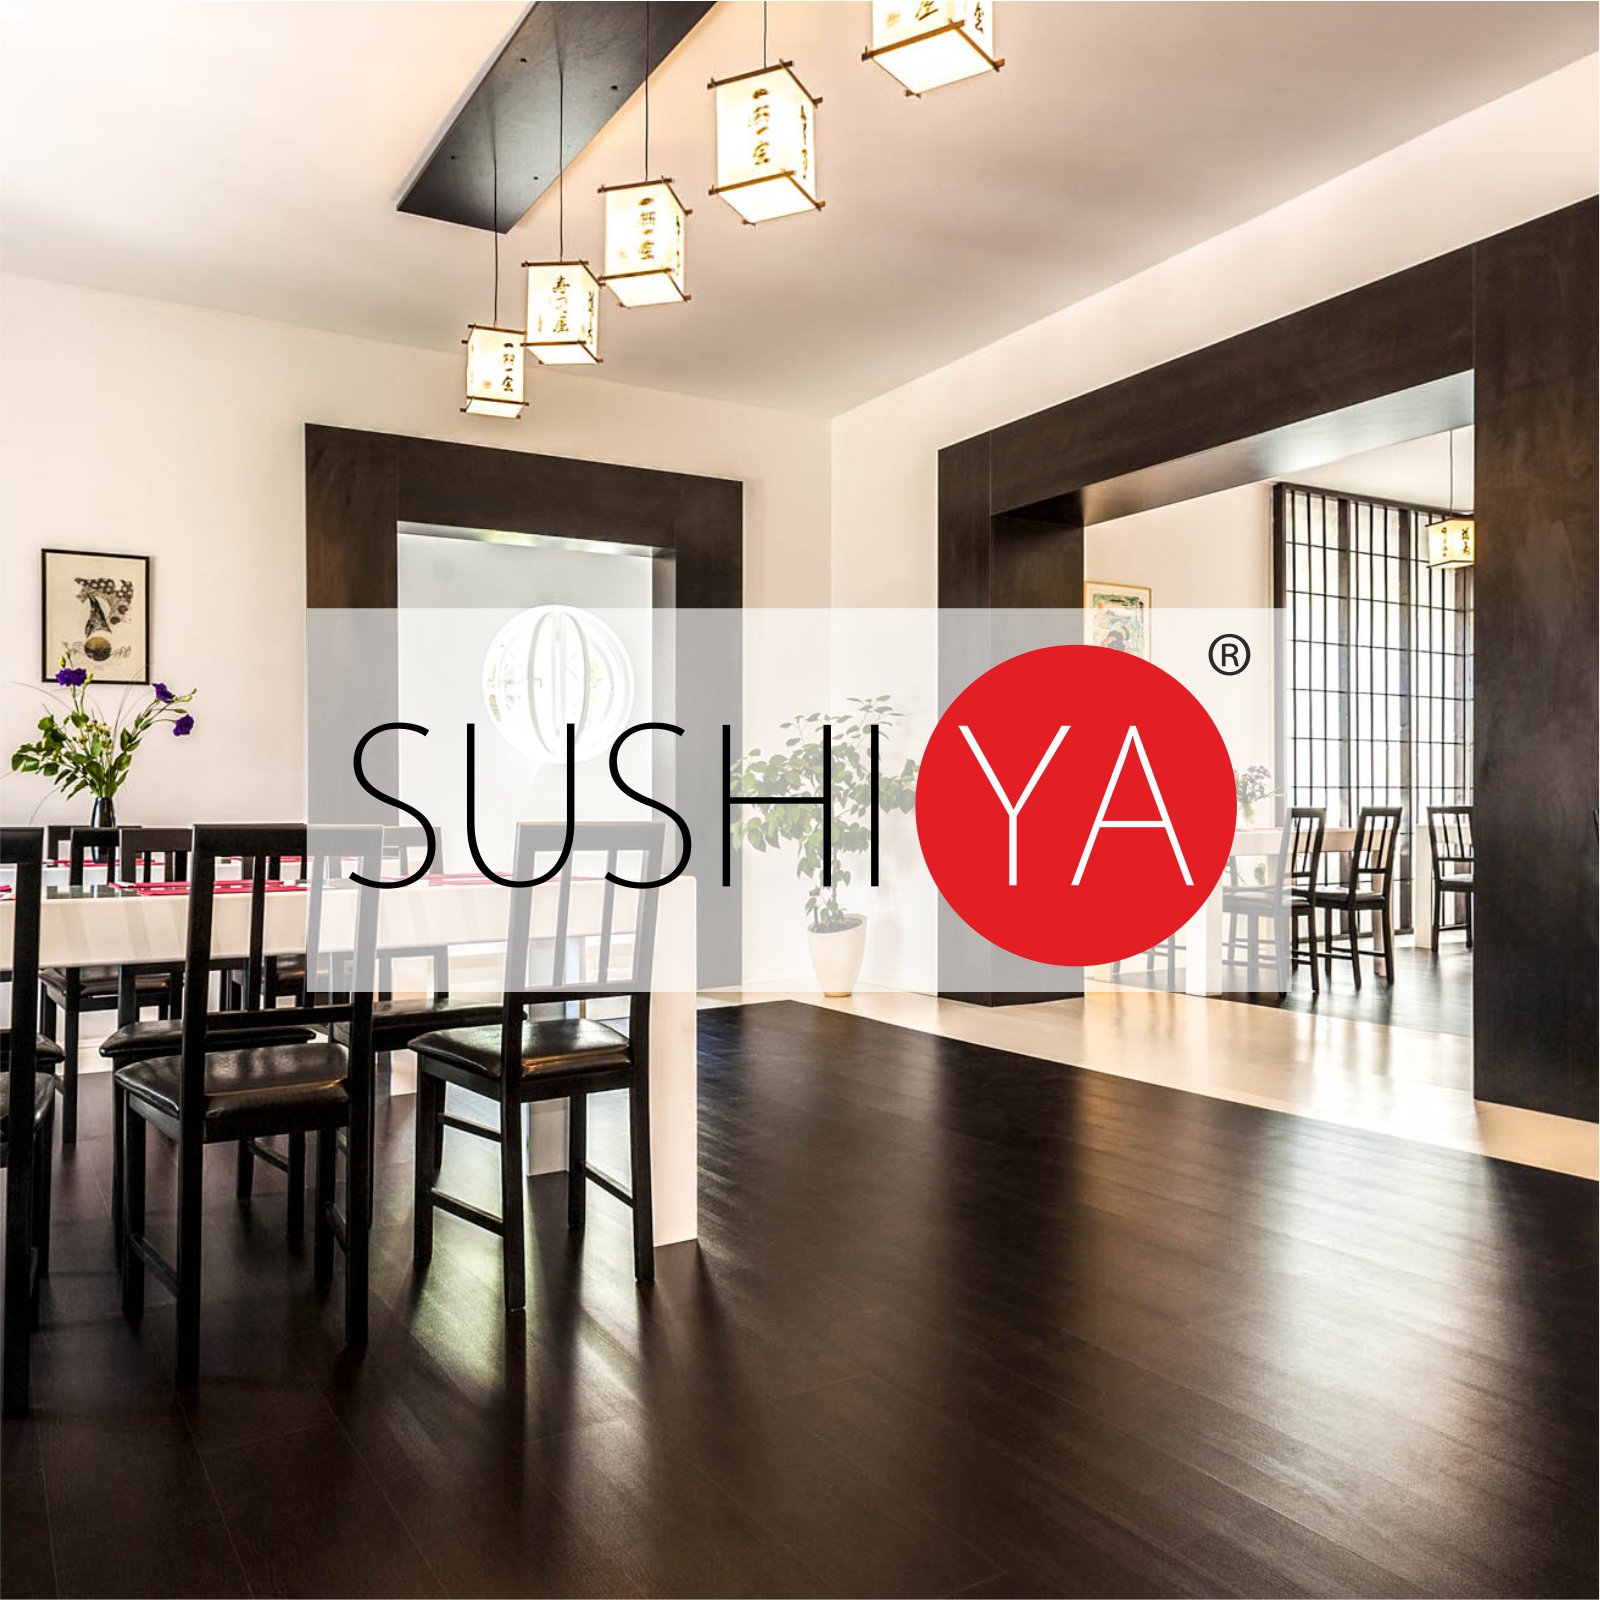 O-ZEN Design Portfolio Sushi Ya Restaurant dargestellt durch Innendesign und Maßarbeit Inneneinrichtung